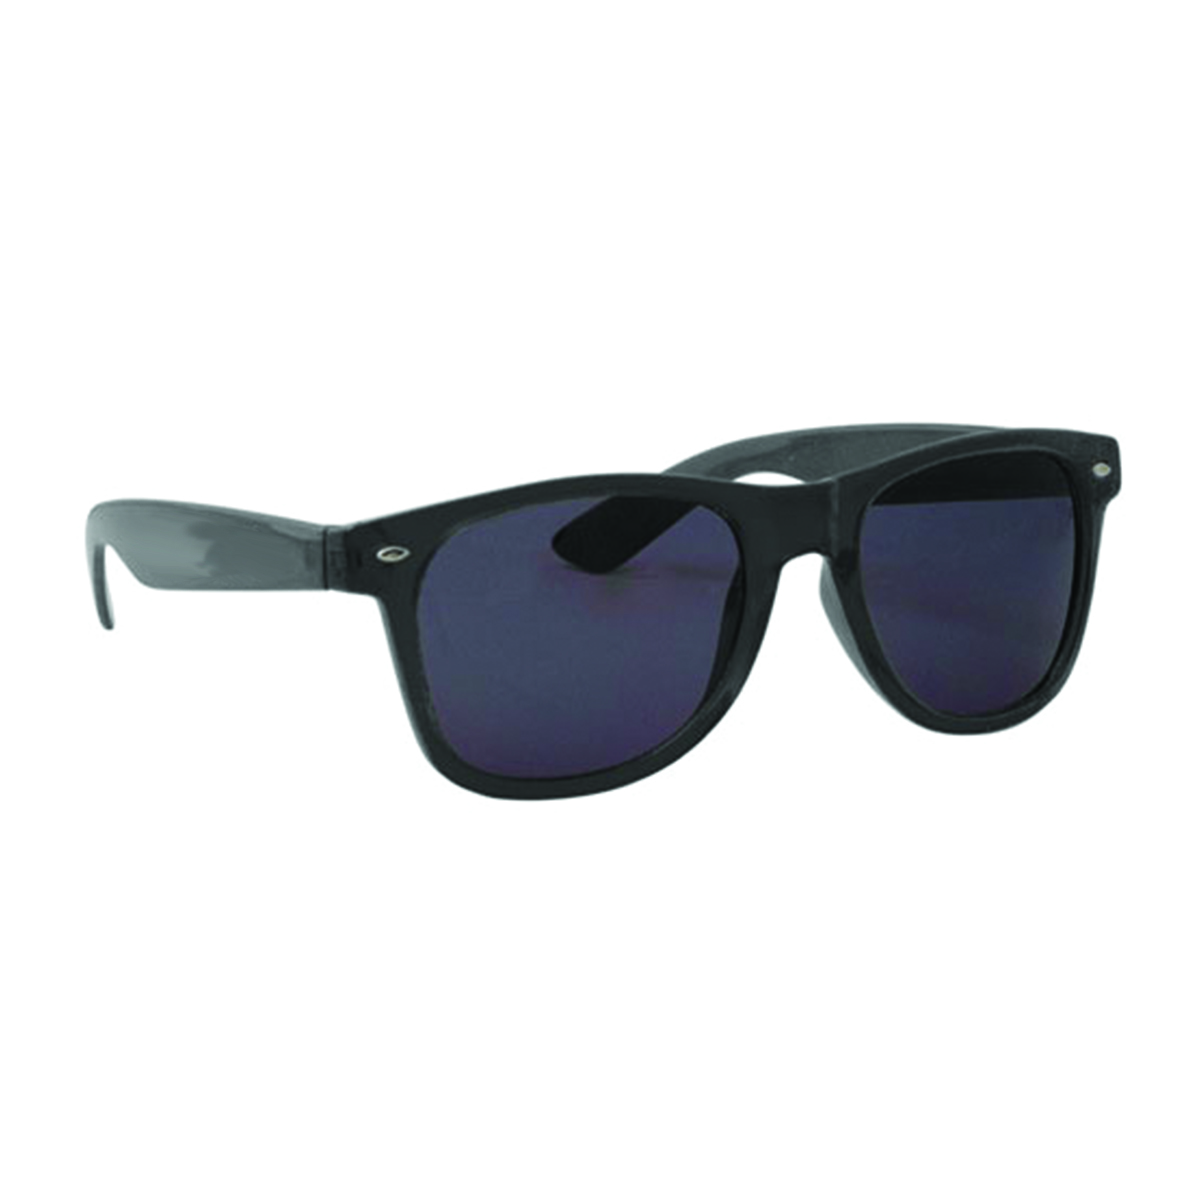 Black Translucent Miami Sunglasses